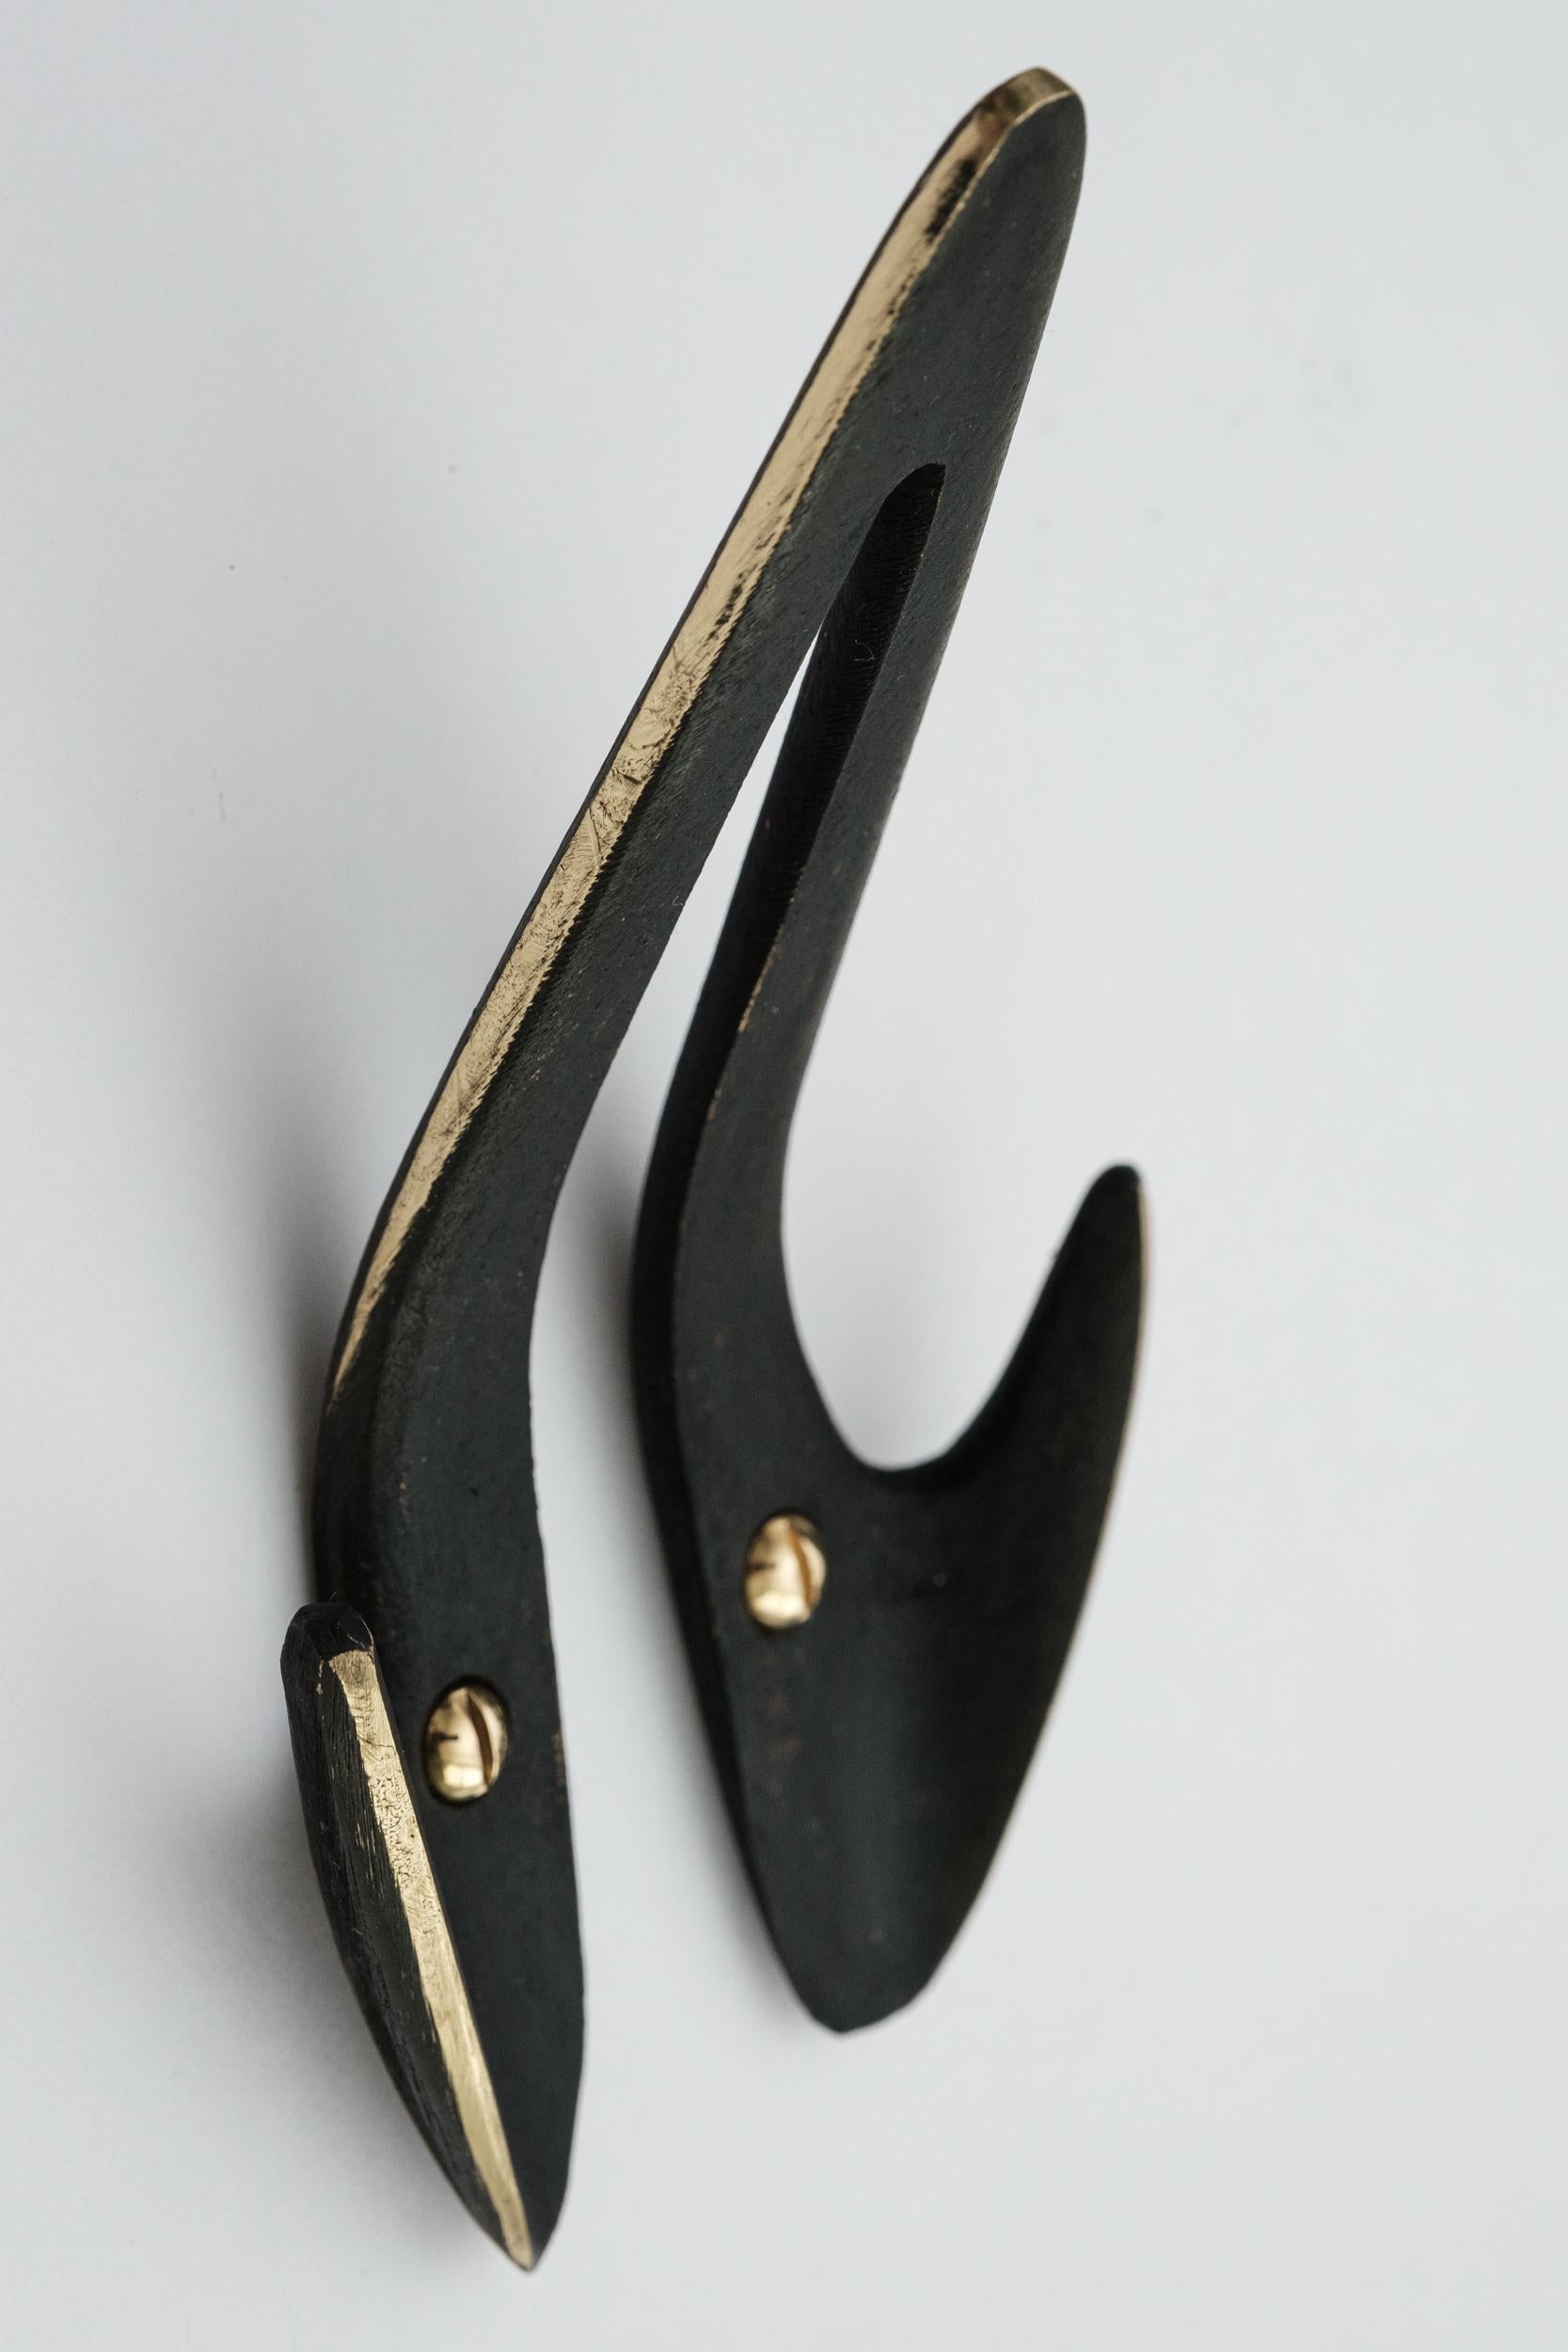 Carl Auböck Modell #4994 patinierter Messinghaken. Dieser vielseitige und minimalistische Wiener Haken wurde in den 1950er Jahren von der Werkstätte Carl Auböck, Österreich, aus patiniertem Messing entworfen. 

Hergestellt von Carl Auböck IV in der